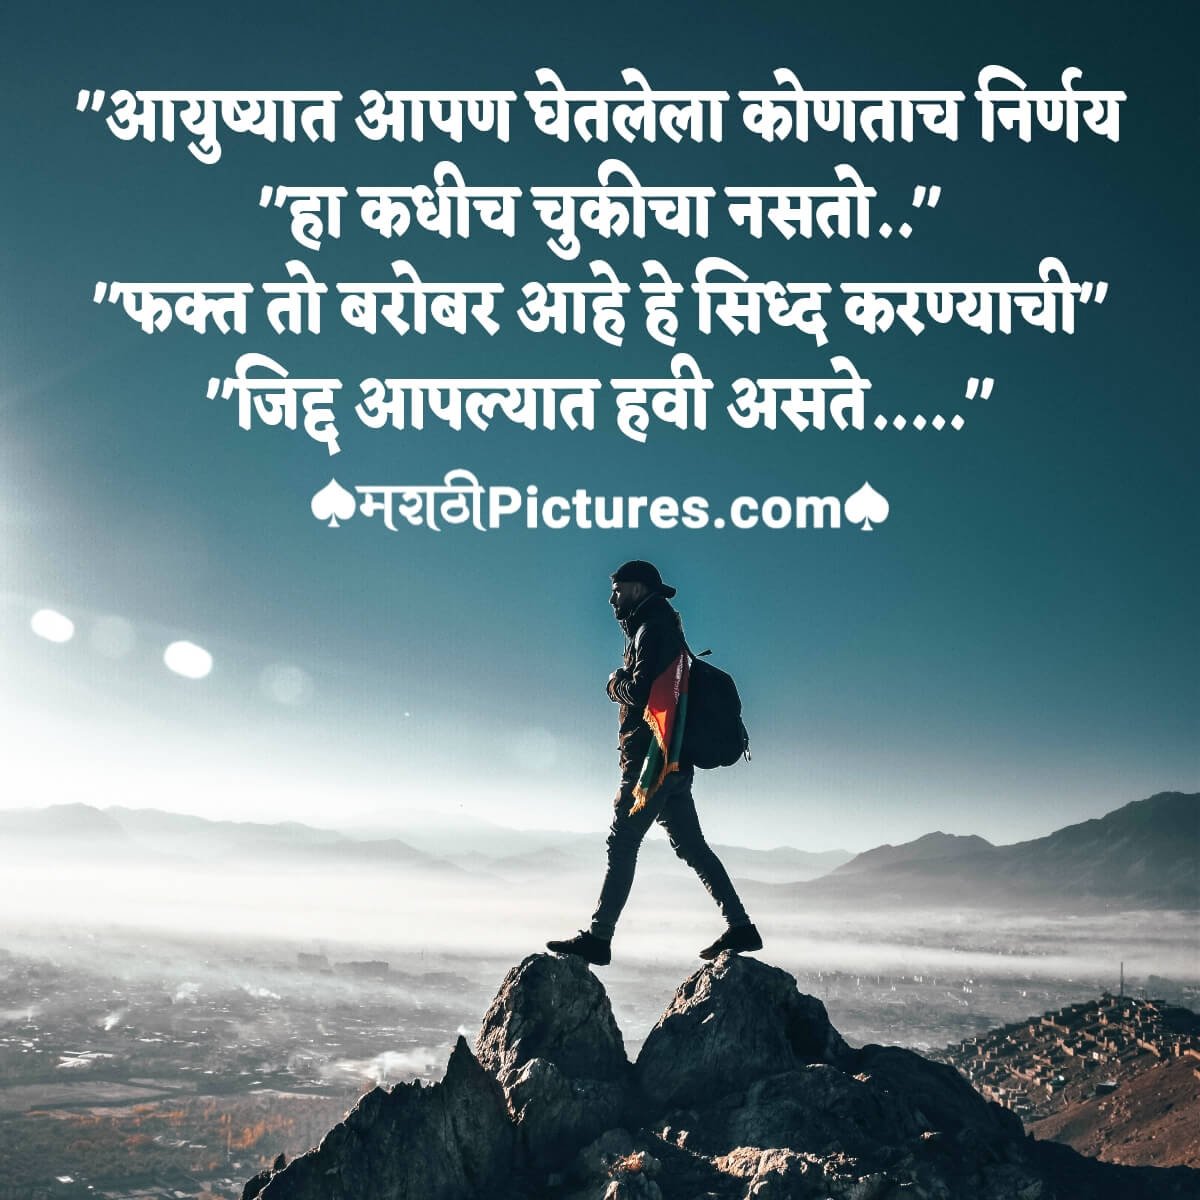 Marathi Quote On Decision In Life - MarathiPictures.com